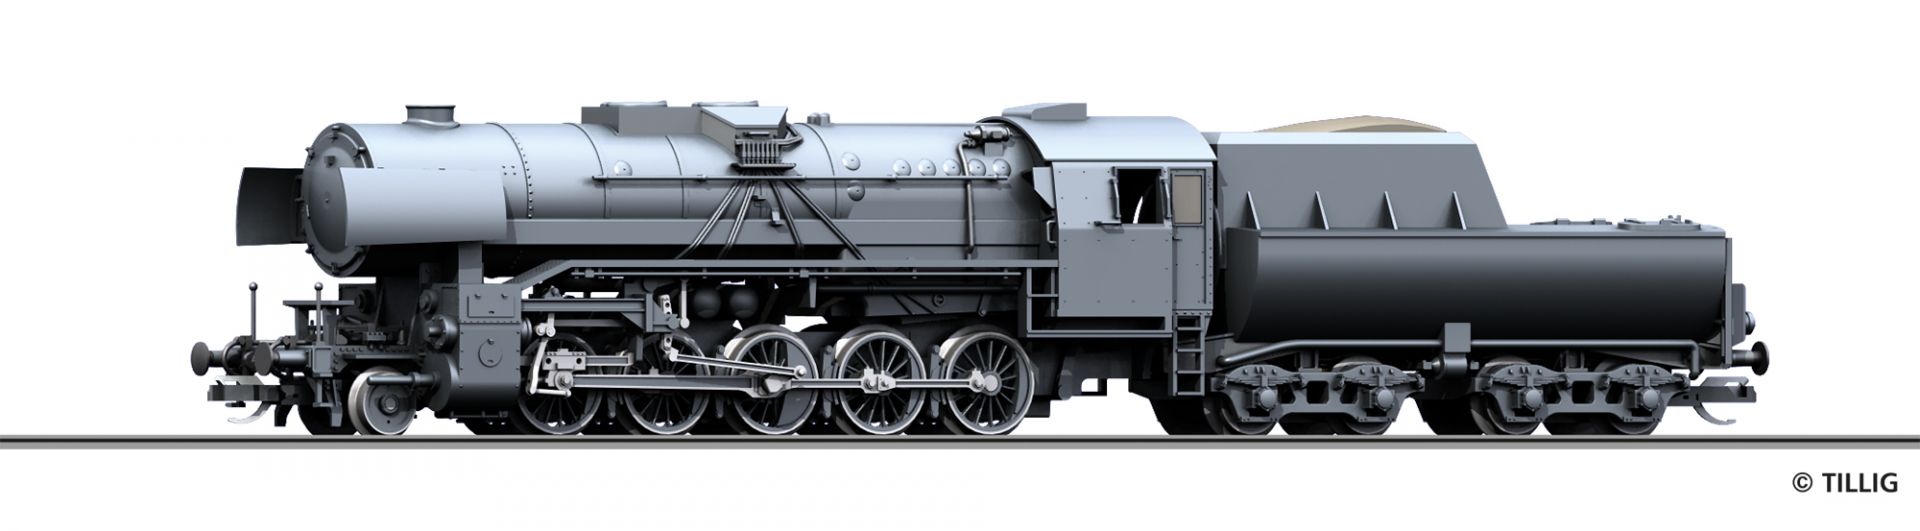 02063 | Dampflokomotive DRG